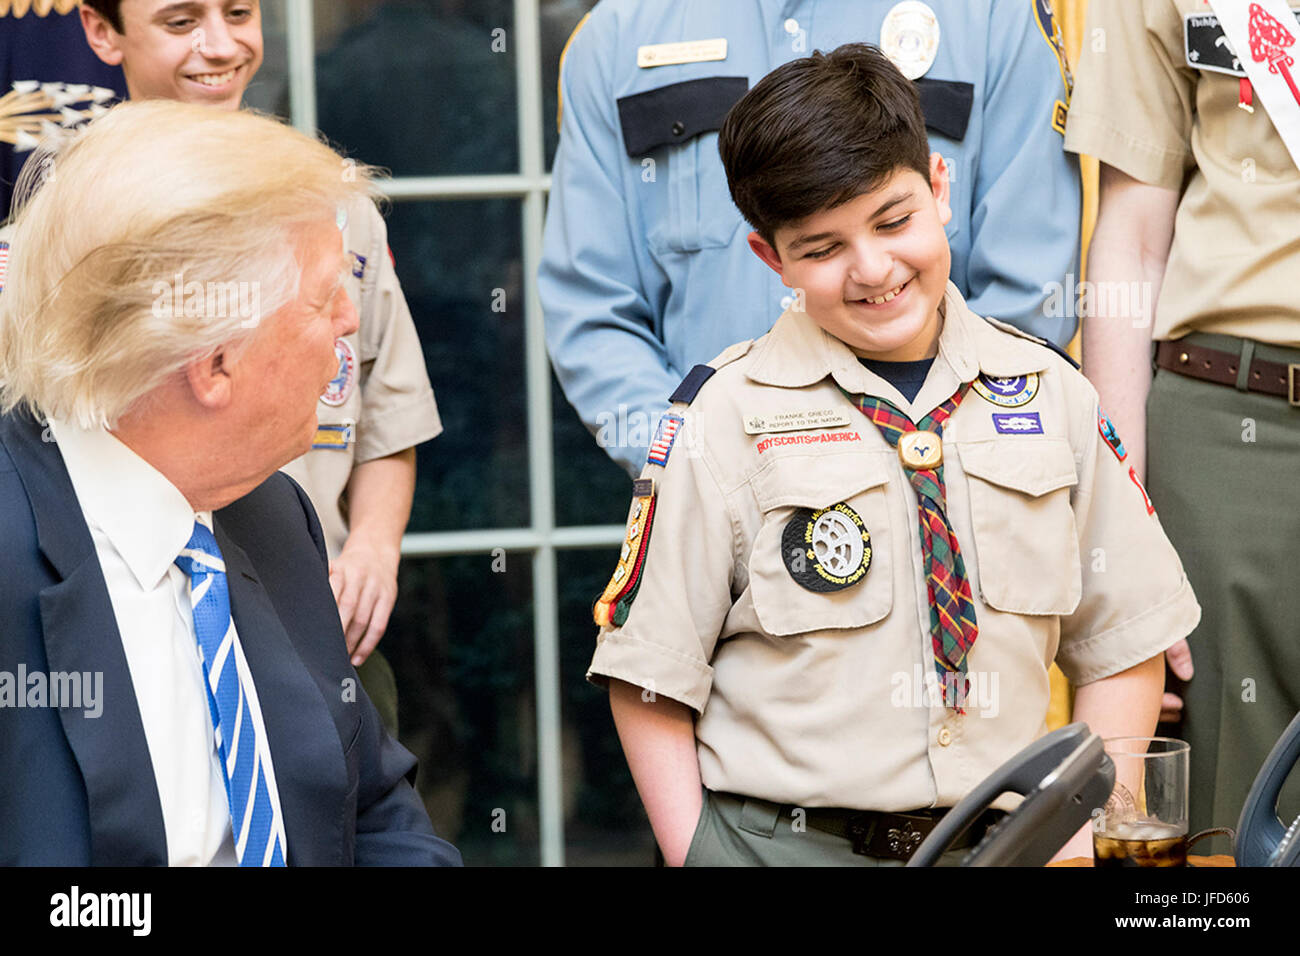 Le président Donald Trump partage un rire avec un membre des Boy Scouts d'Amérique, le mardi 7 mars 2017, dans le bureau ovale. Officiel de la Maison Blanche (photo par Shealah Craighead) Banque D'Images